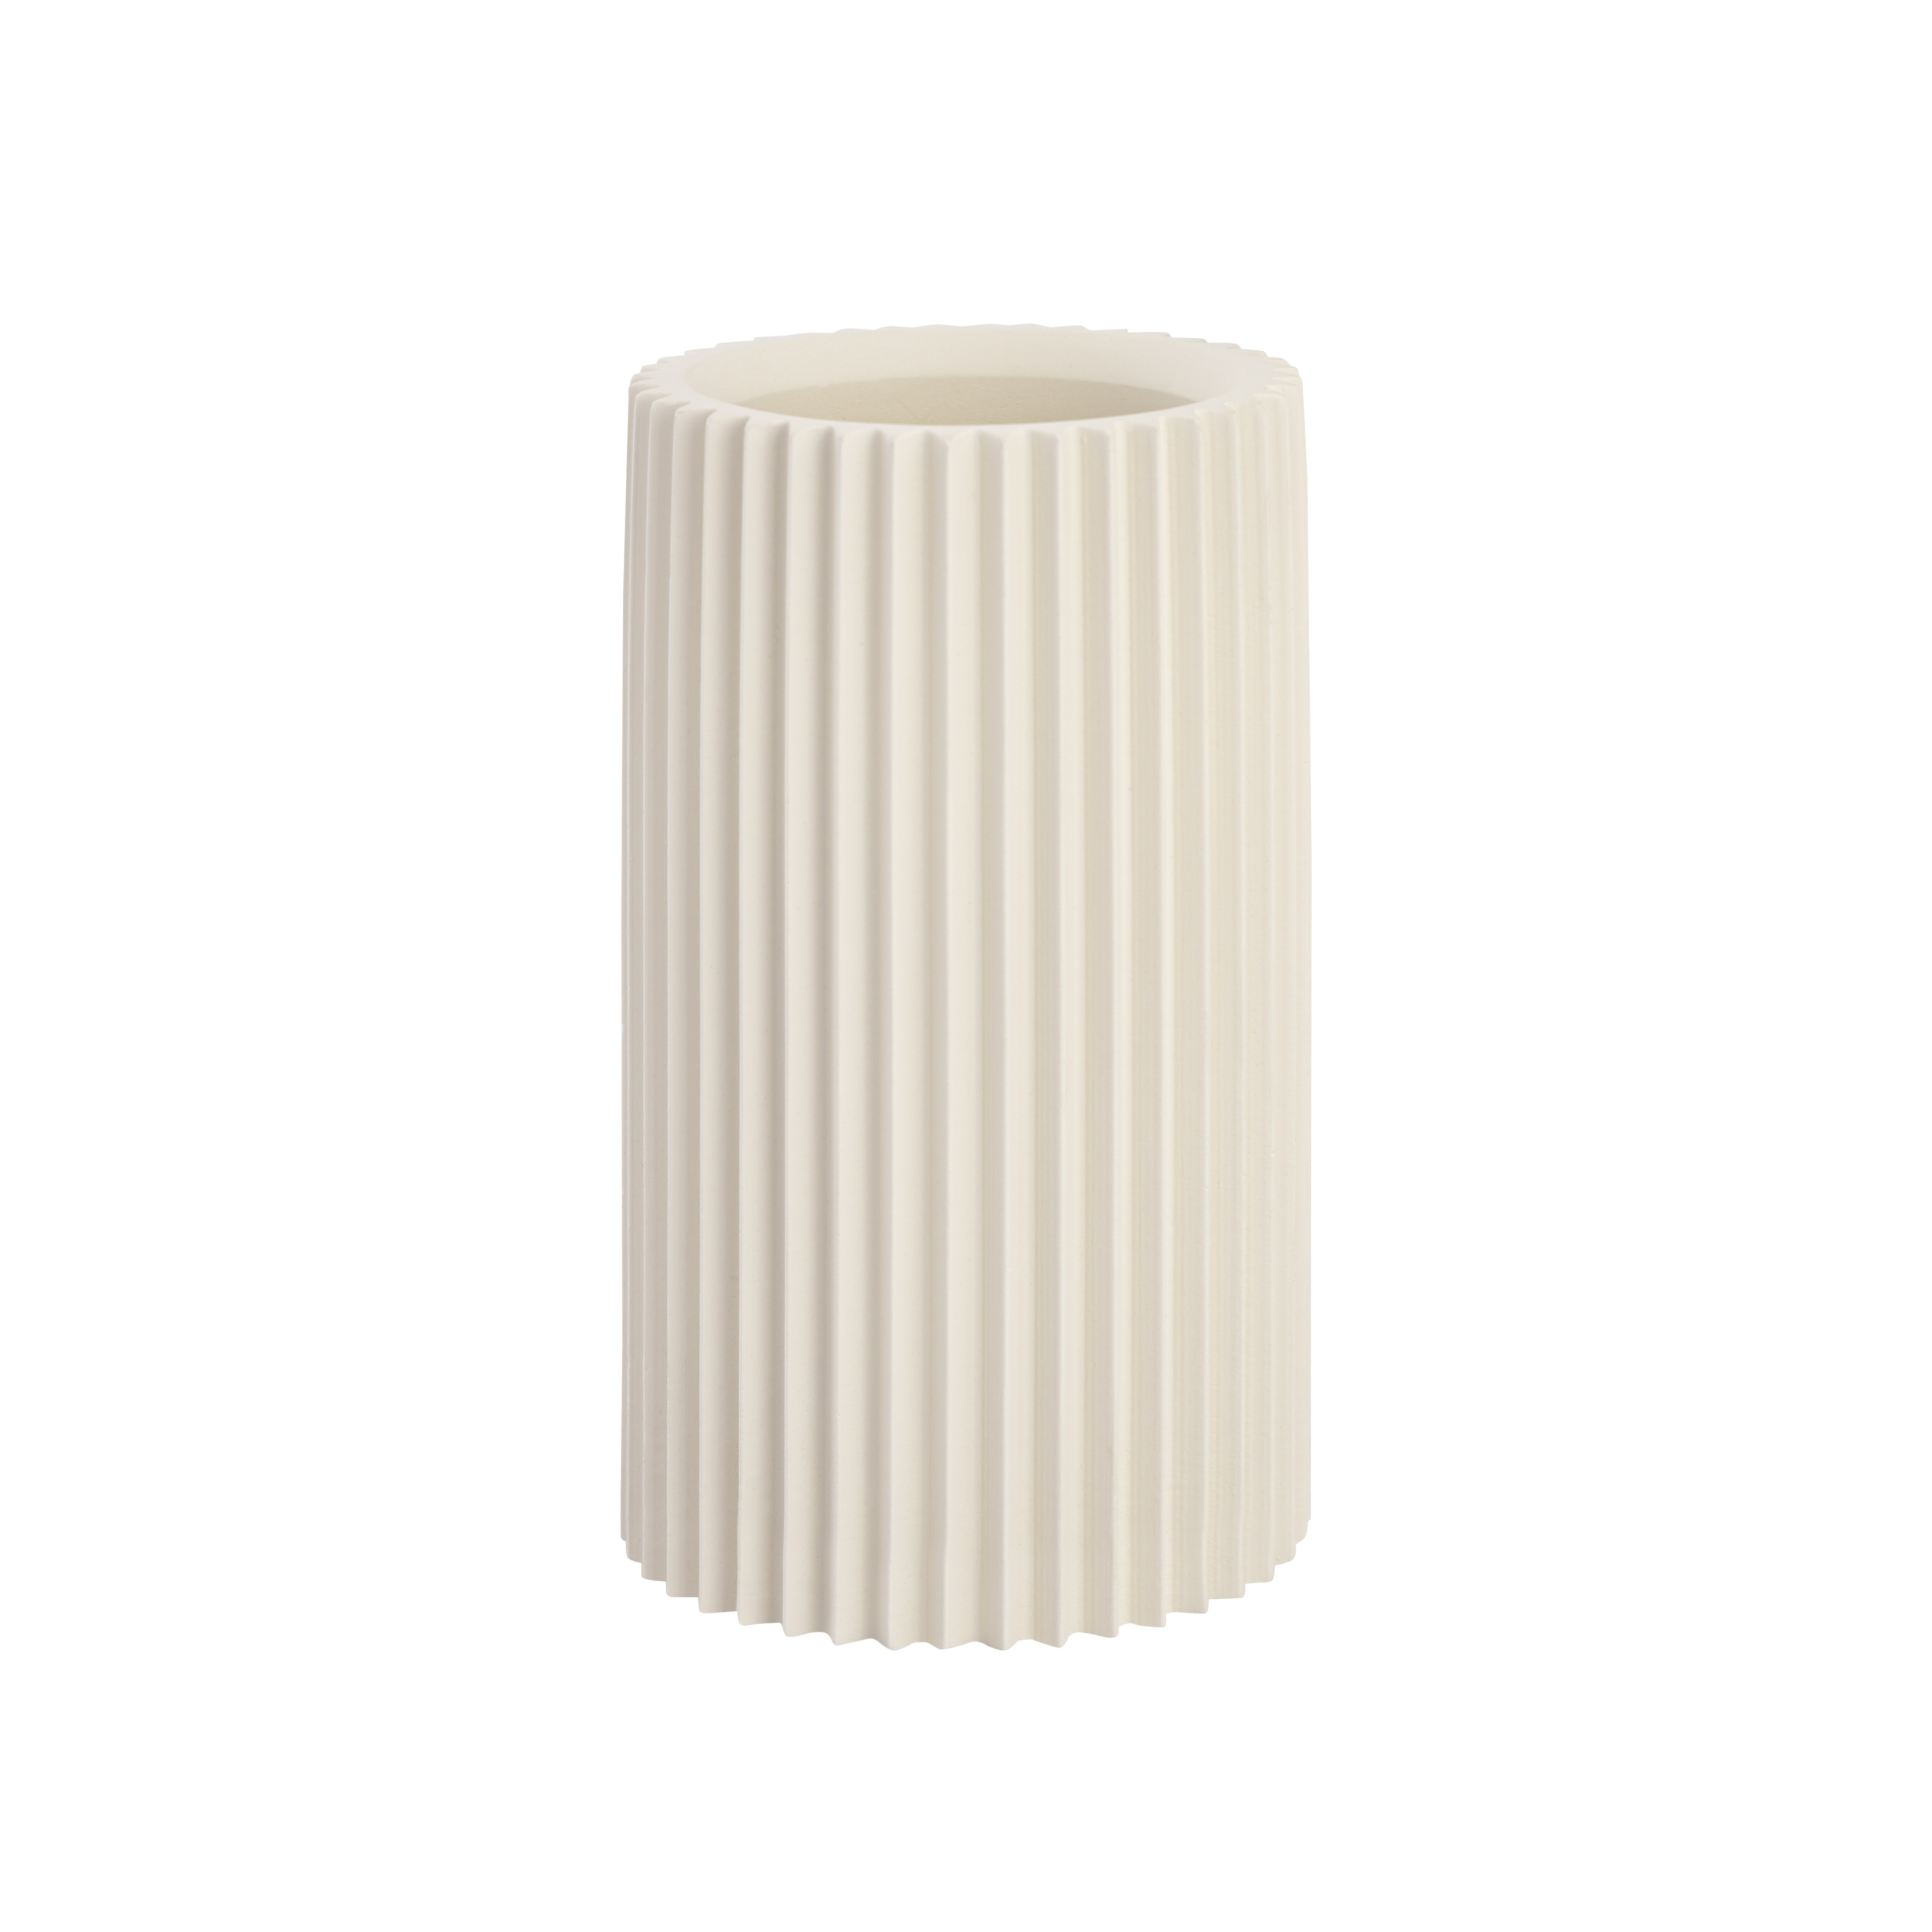 Jenna White Concrete Table Vase - TOV-C18426